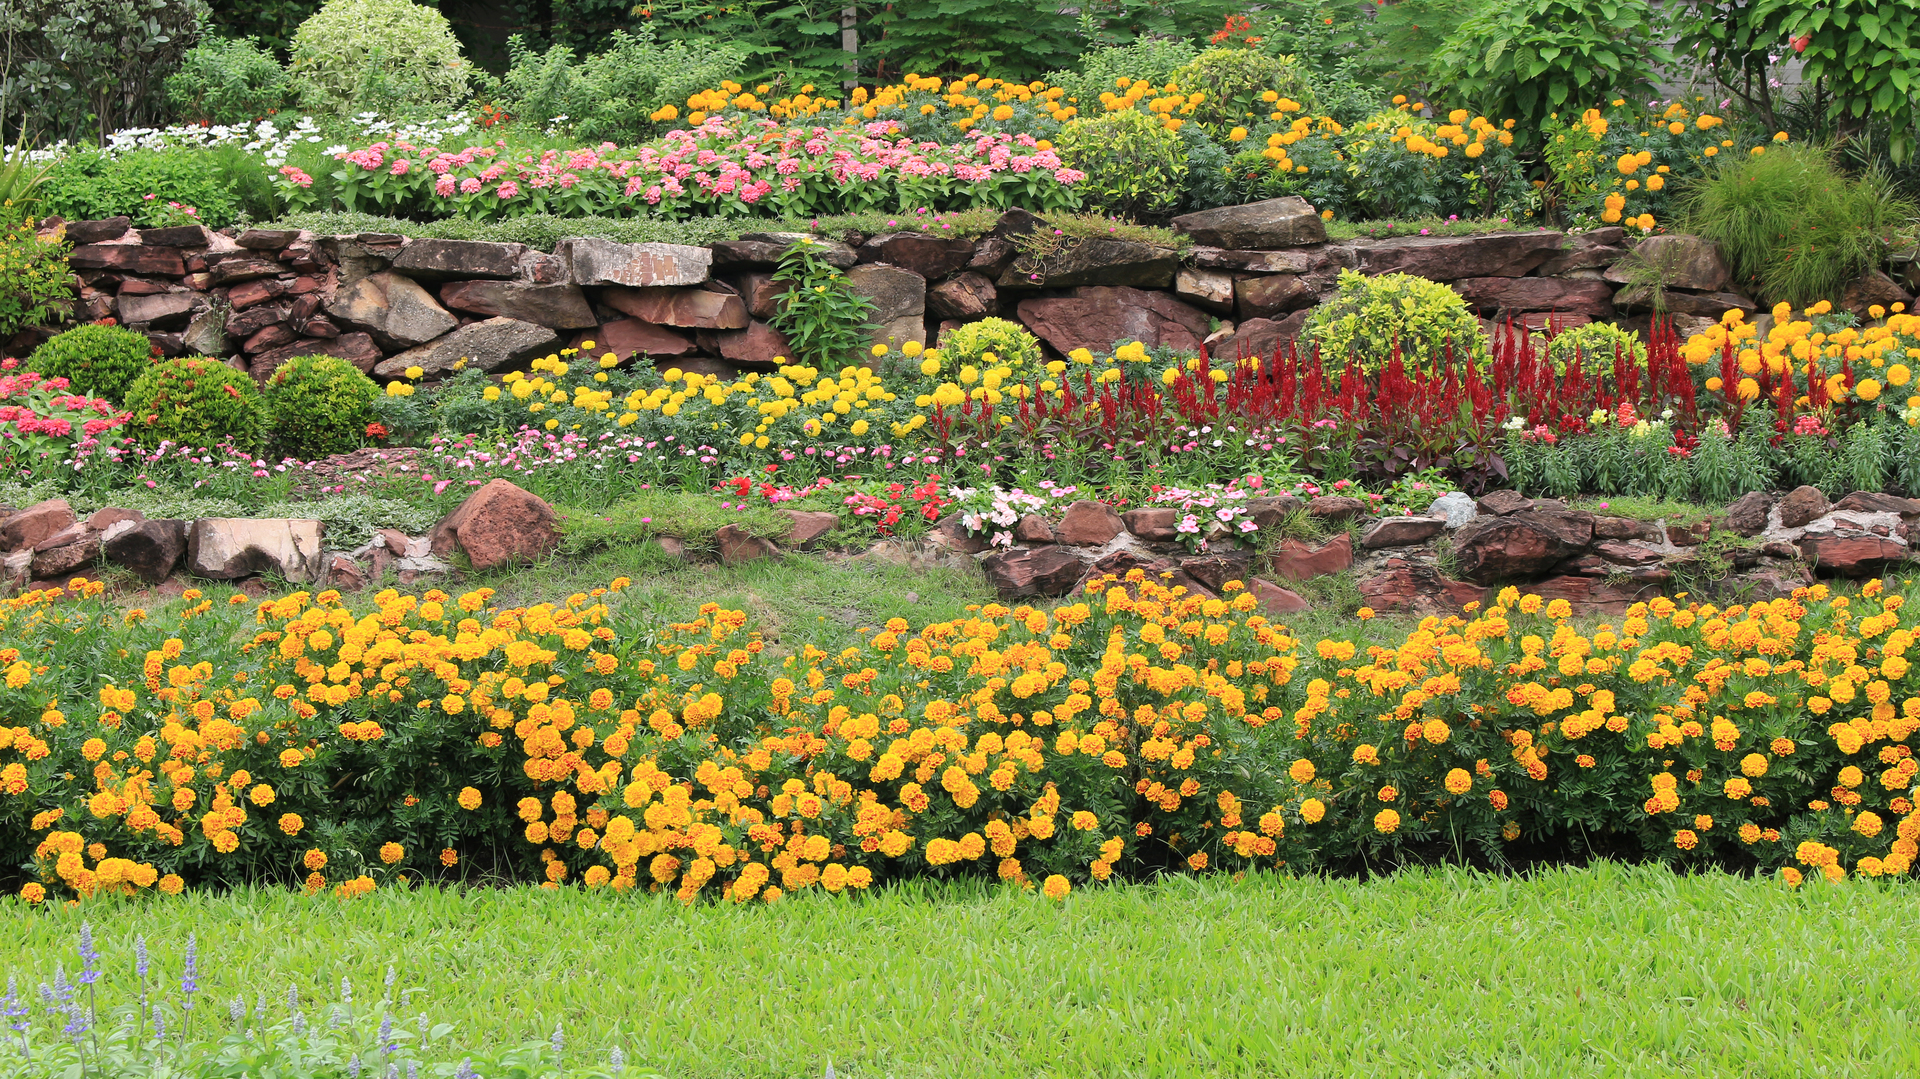 Na tym zdjęciu widzimy piękny i kolorowy ogród deszczowy. Widać różnorodne rośliny o intensywnych kolorach, takie jak czerwone kwiaty, żółte liście czy fioletowe kwiatostany. Rośliny te są pięknie ułożone w ogrodzie, tworząc harmonijną kompozycję kolorystyczną. W tle widać pojemnik na wodę deszczową oraz specjalne urządzenia służące do zbierania i magazynowania wody. Całość obrazu tworzy wrażenie ekologicznego ogrodu, który nie tylko zachwyca pięknem, ale także chroni środowisko naturalne i pomaga oszczędzać wodę.